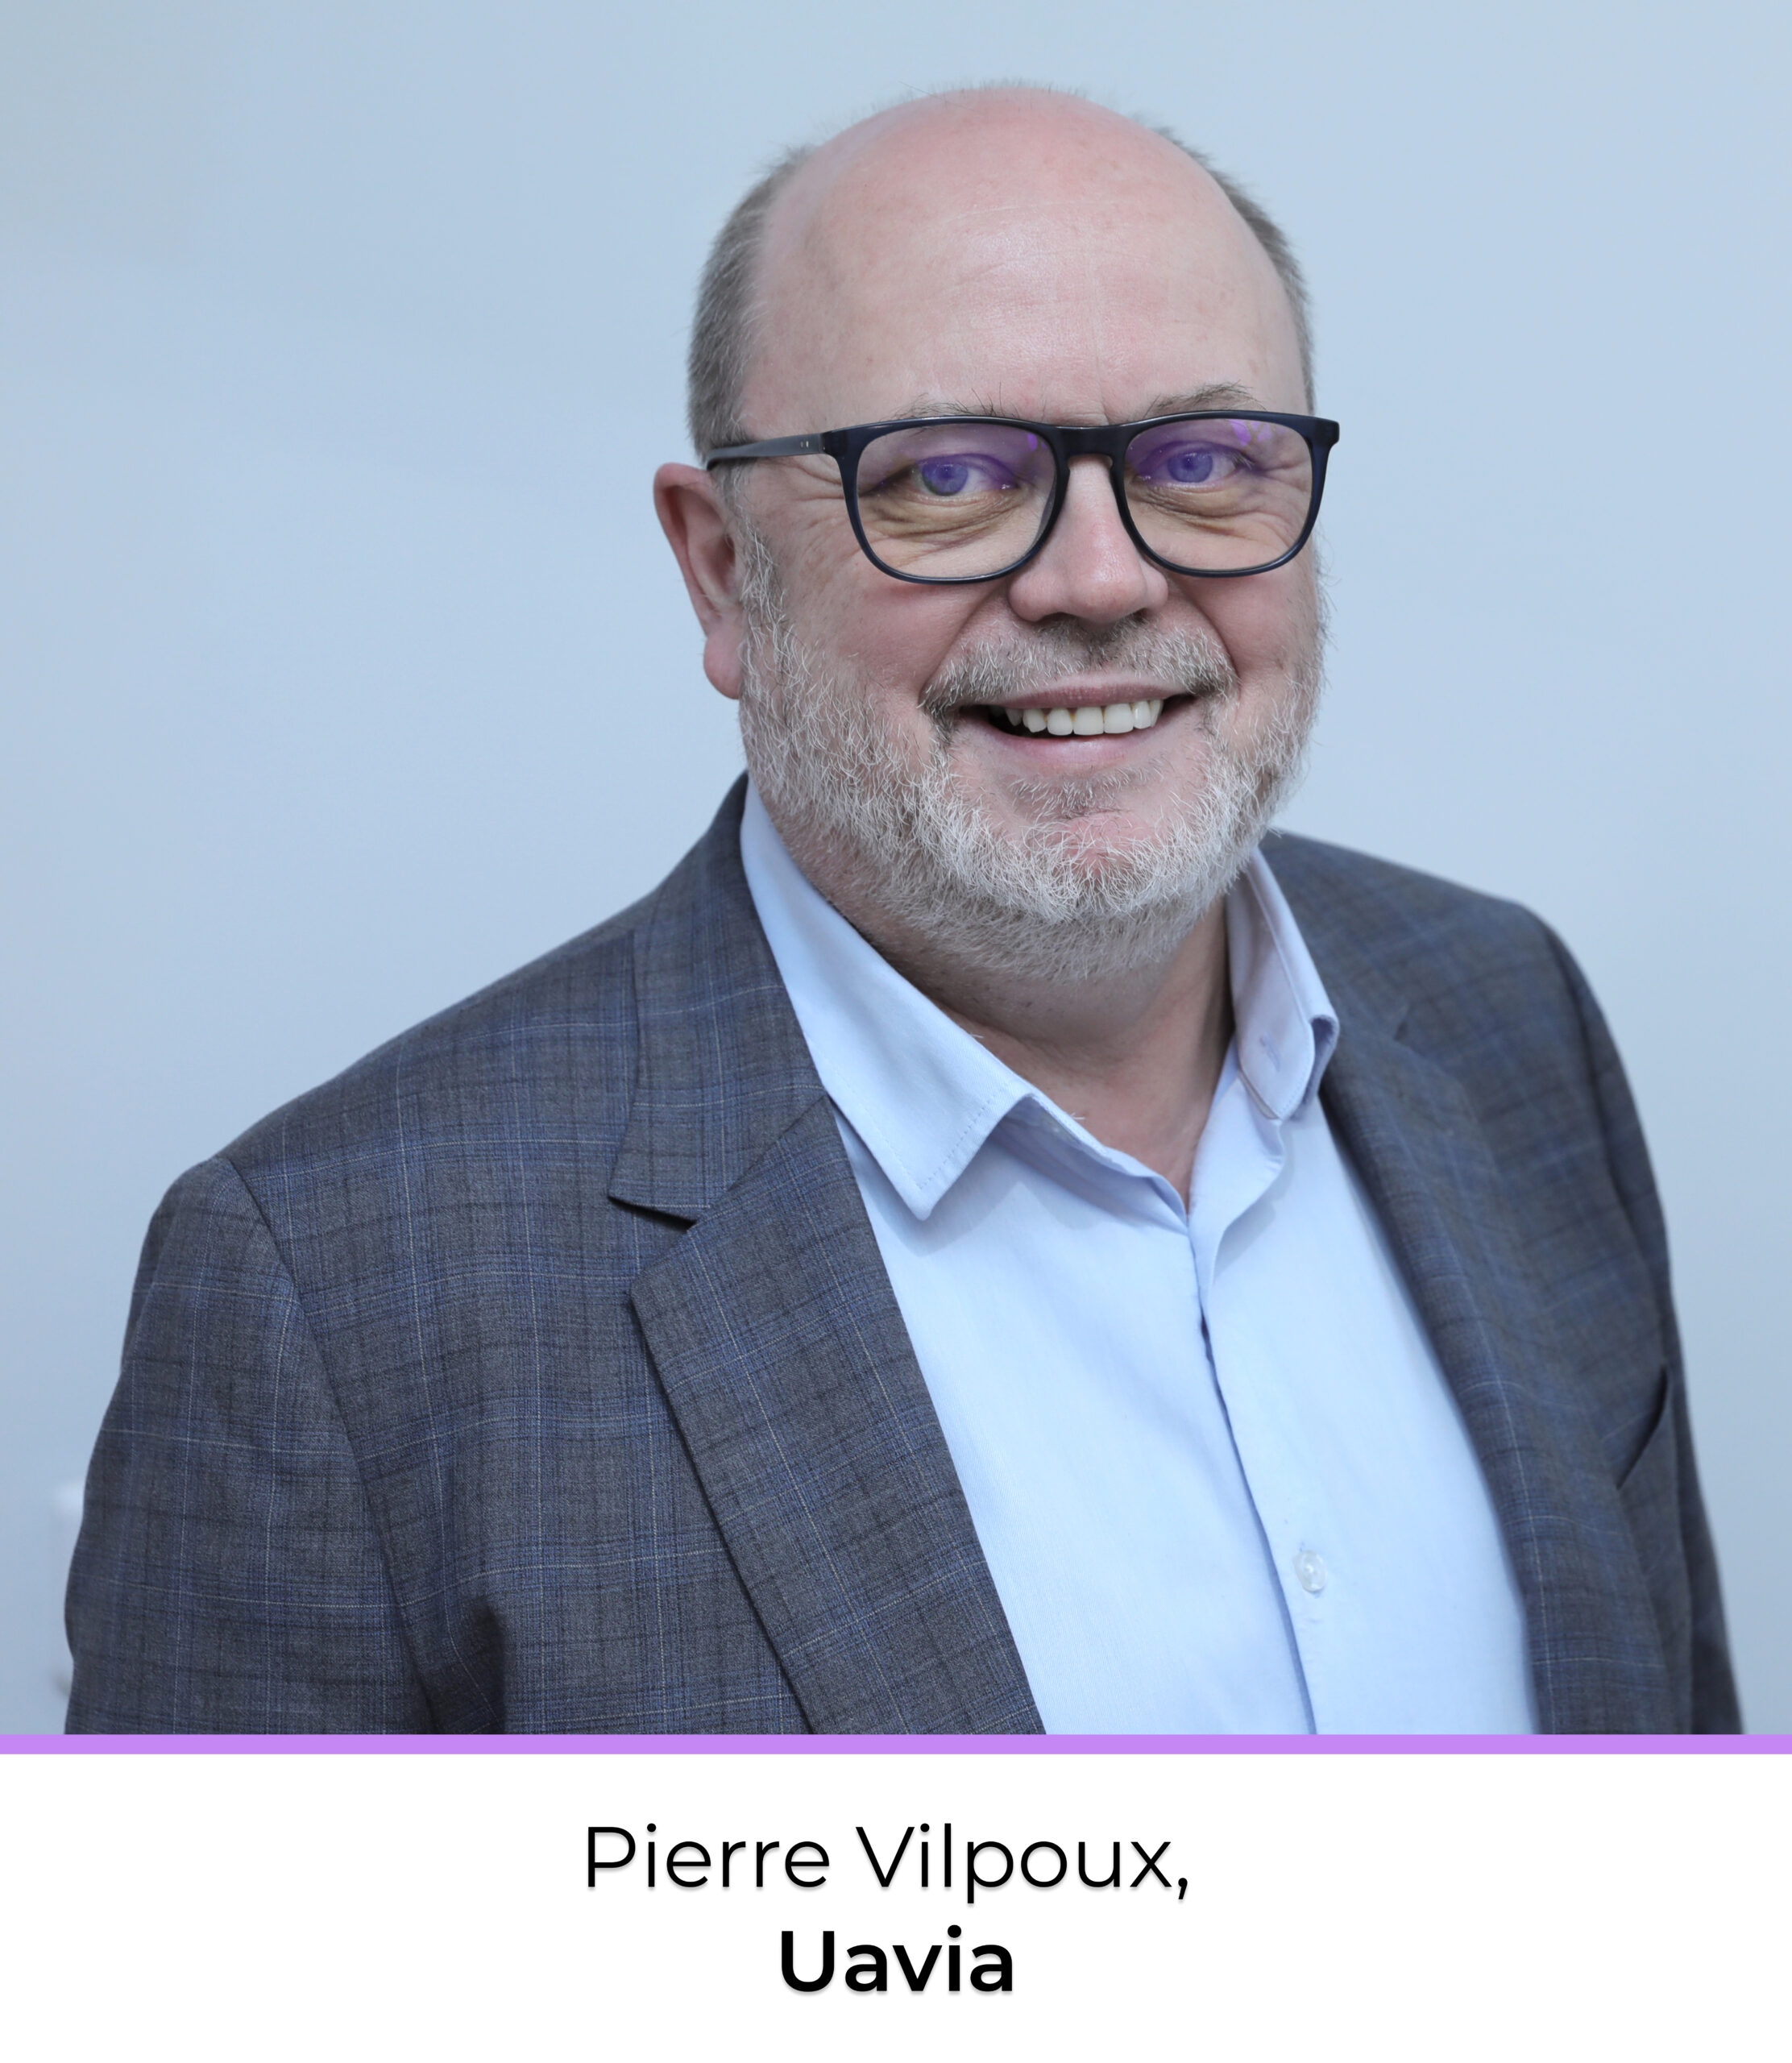 Pierre vilpoux